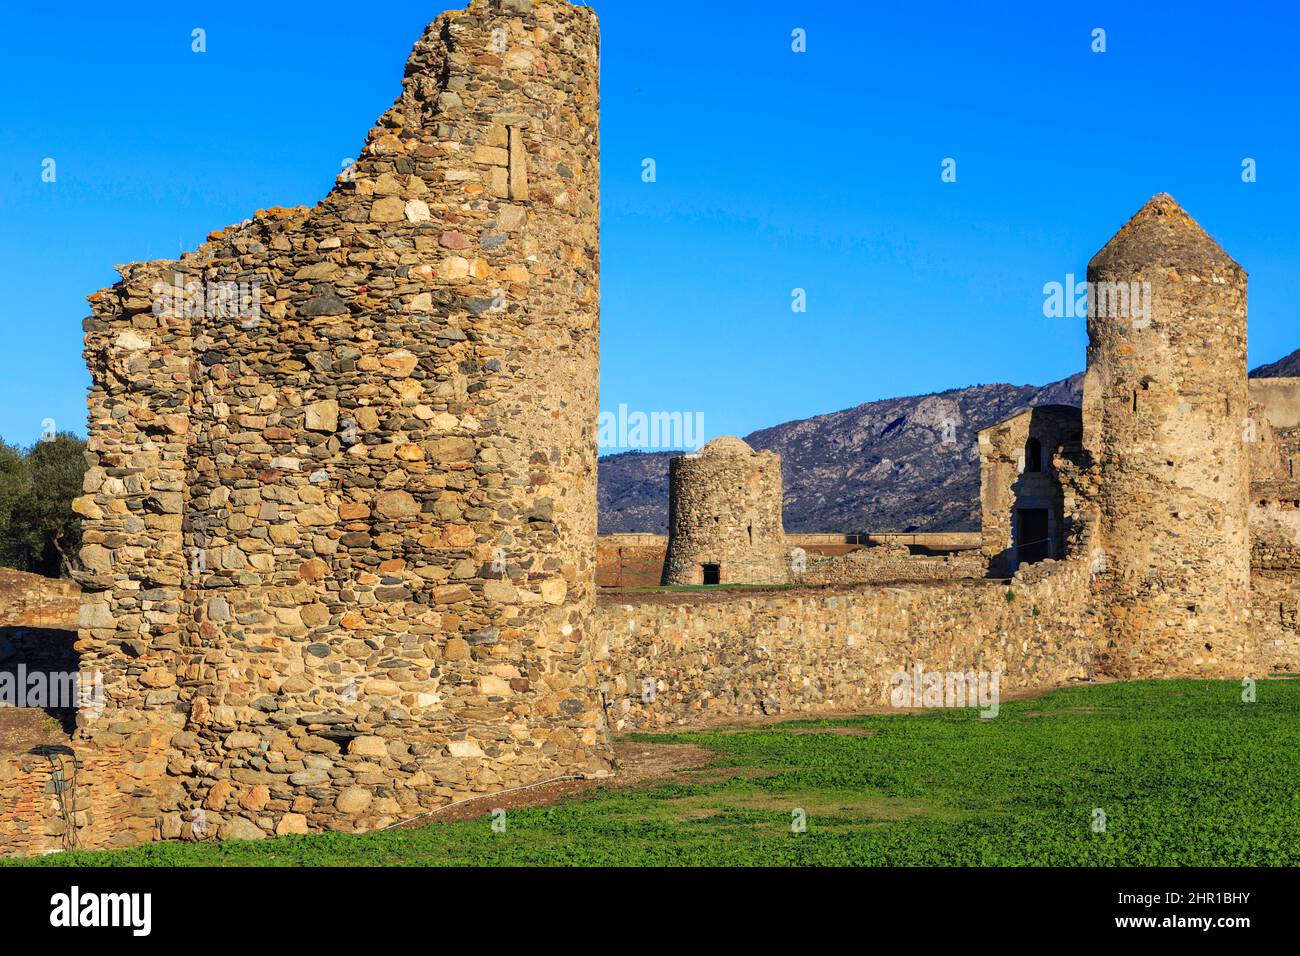 Mittelalterliches Dorf, Zitadelle von Roses, Costa Brava, Katalonien,  Spanien Stockfotografie - Alamy